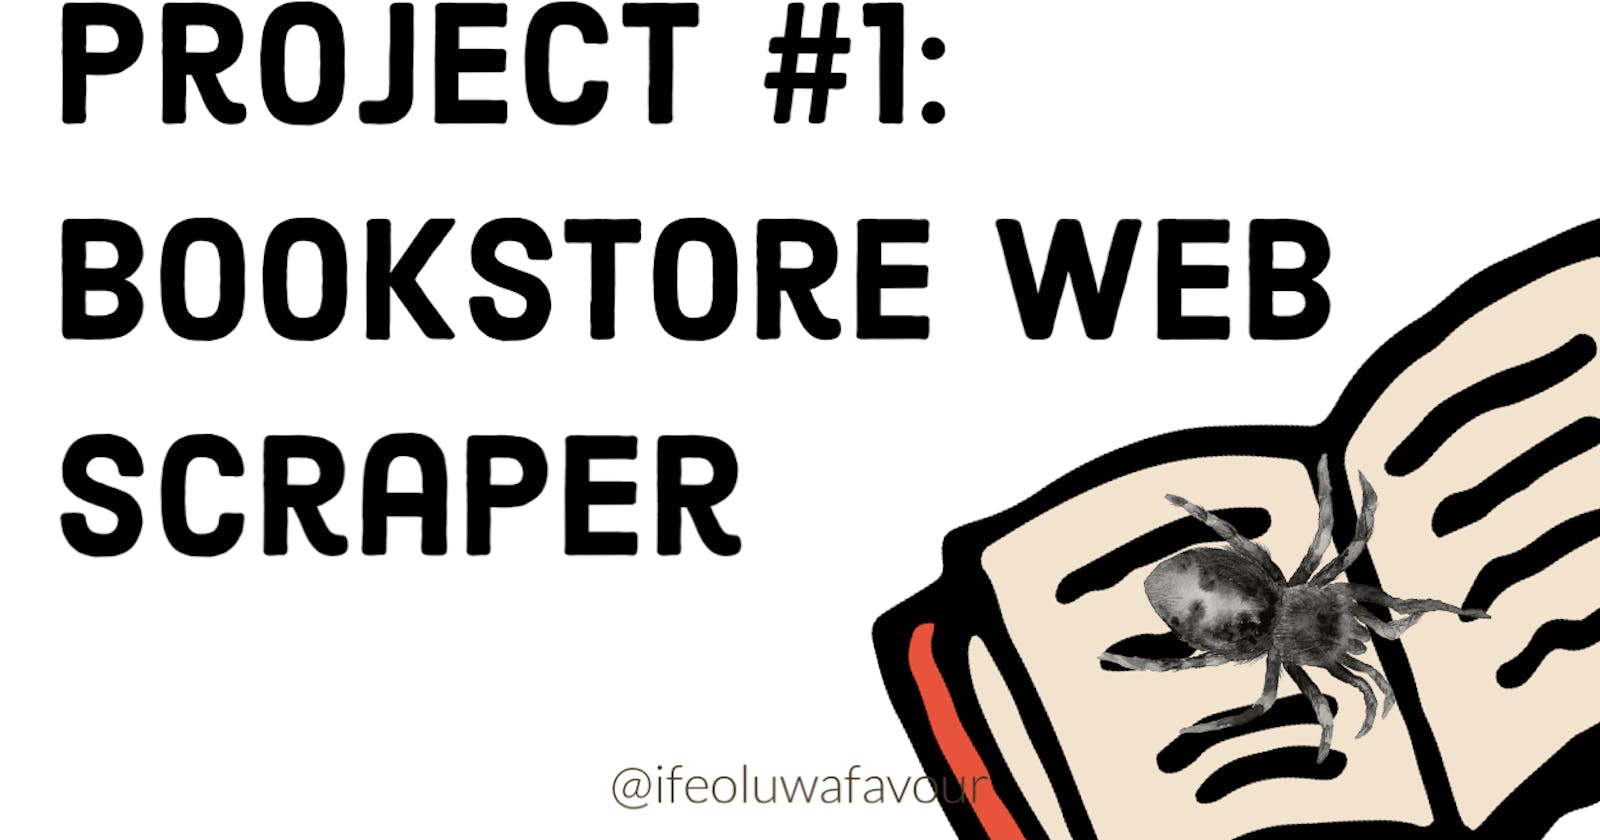 Project #1: Bookstore Web Scraper